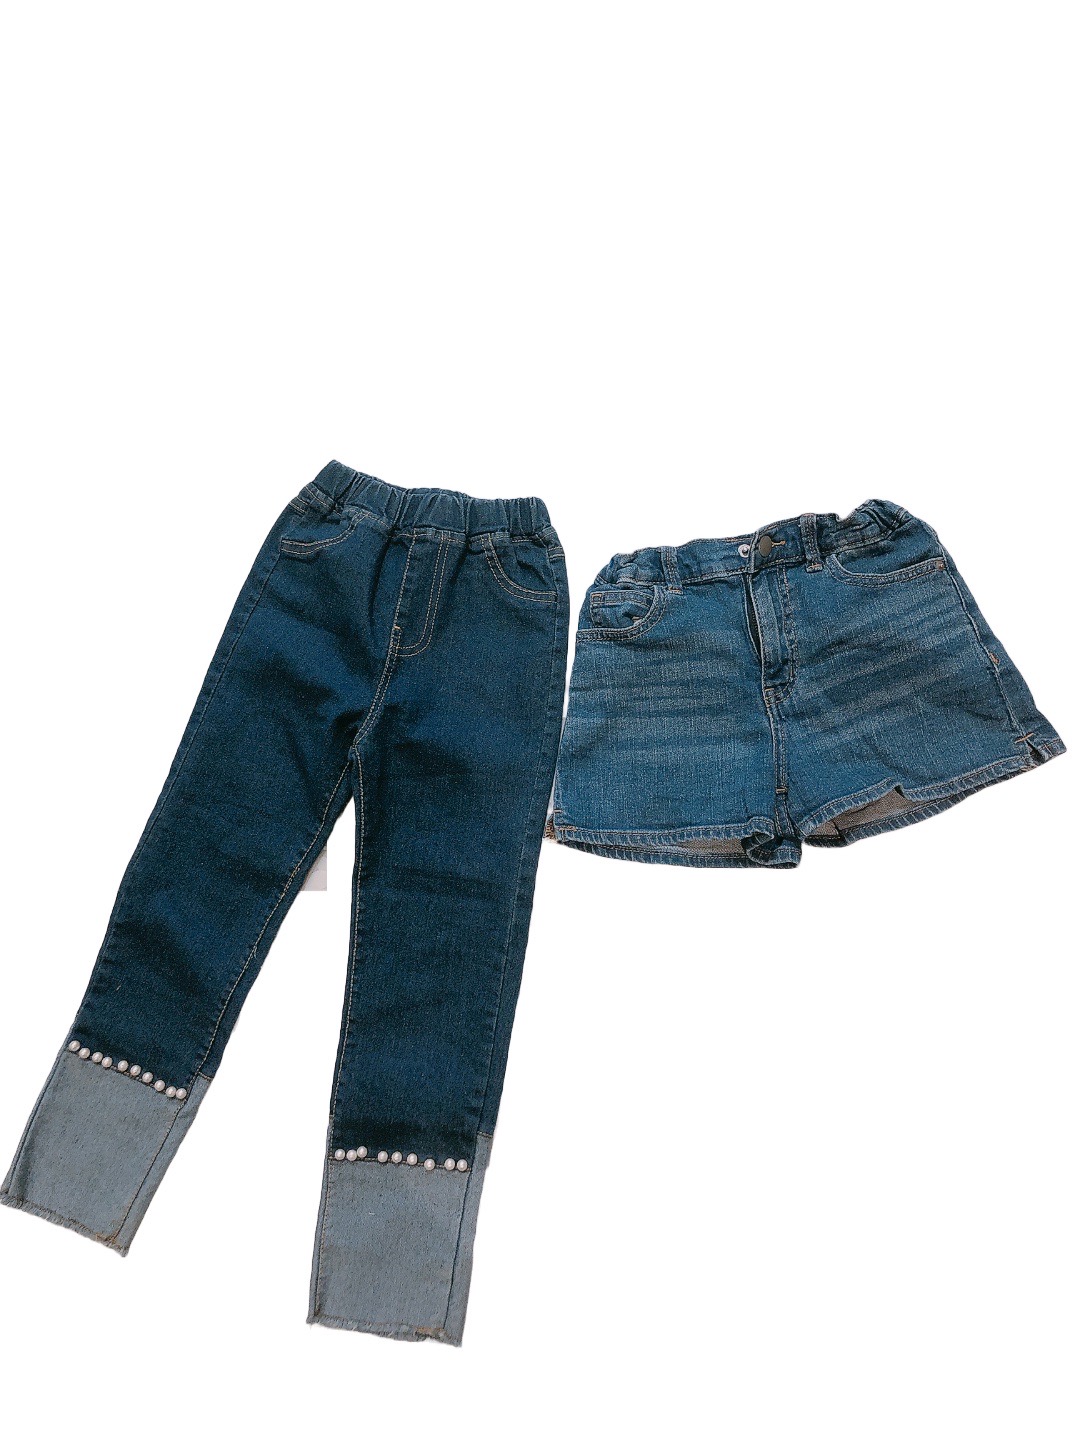 《NUV》淺藍短兒童牛仔褲贈送牛仔長褲(120cm)
NT$109